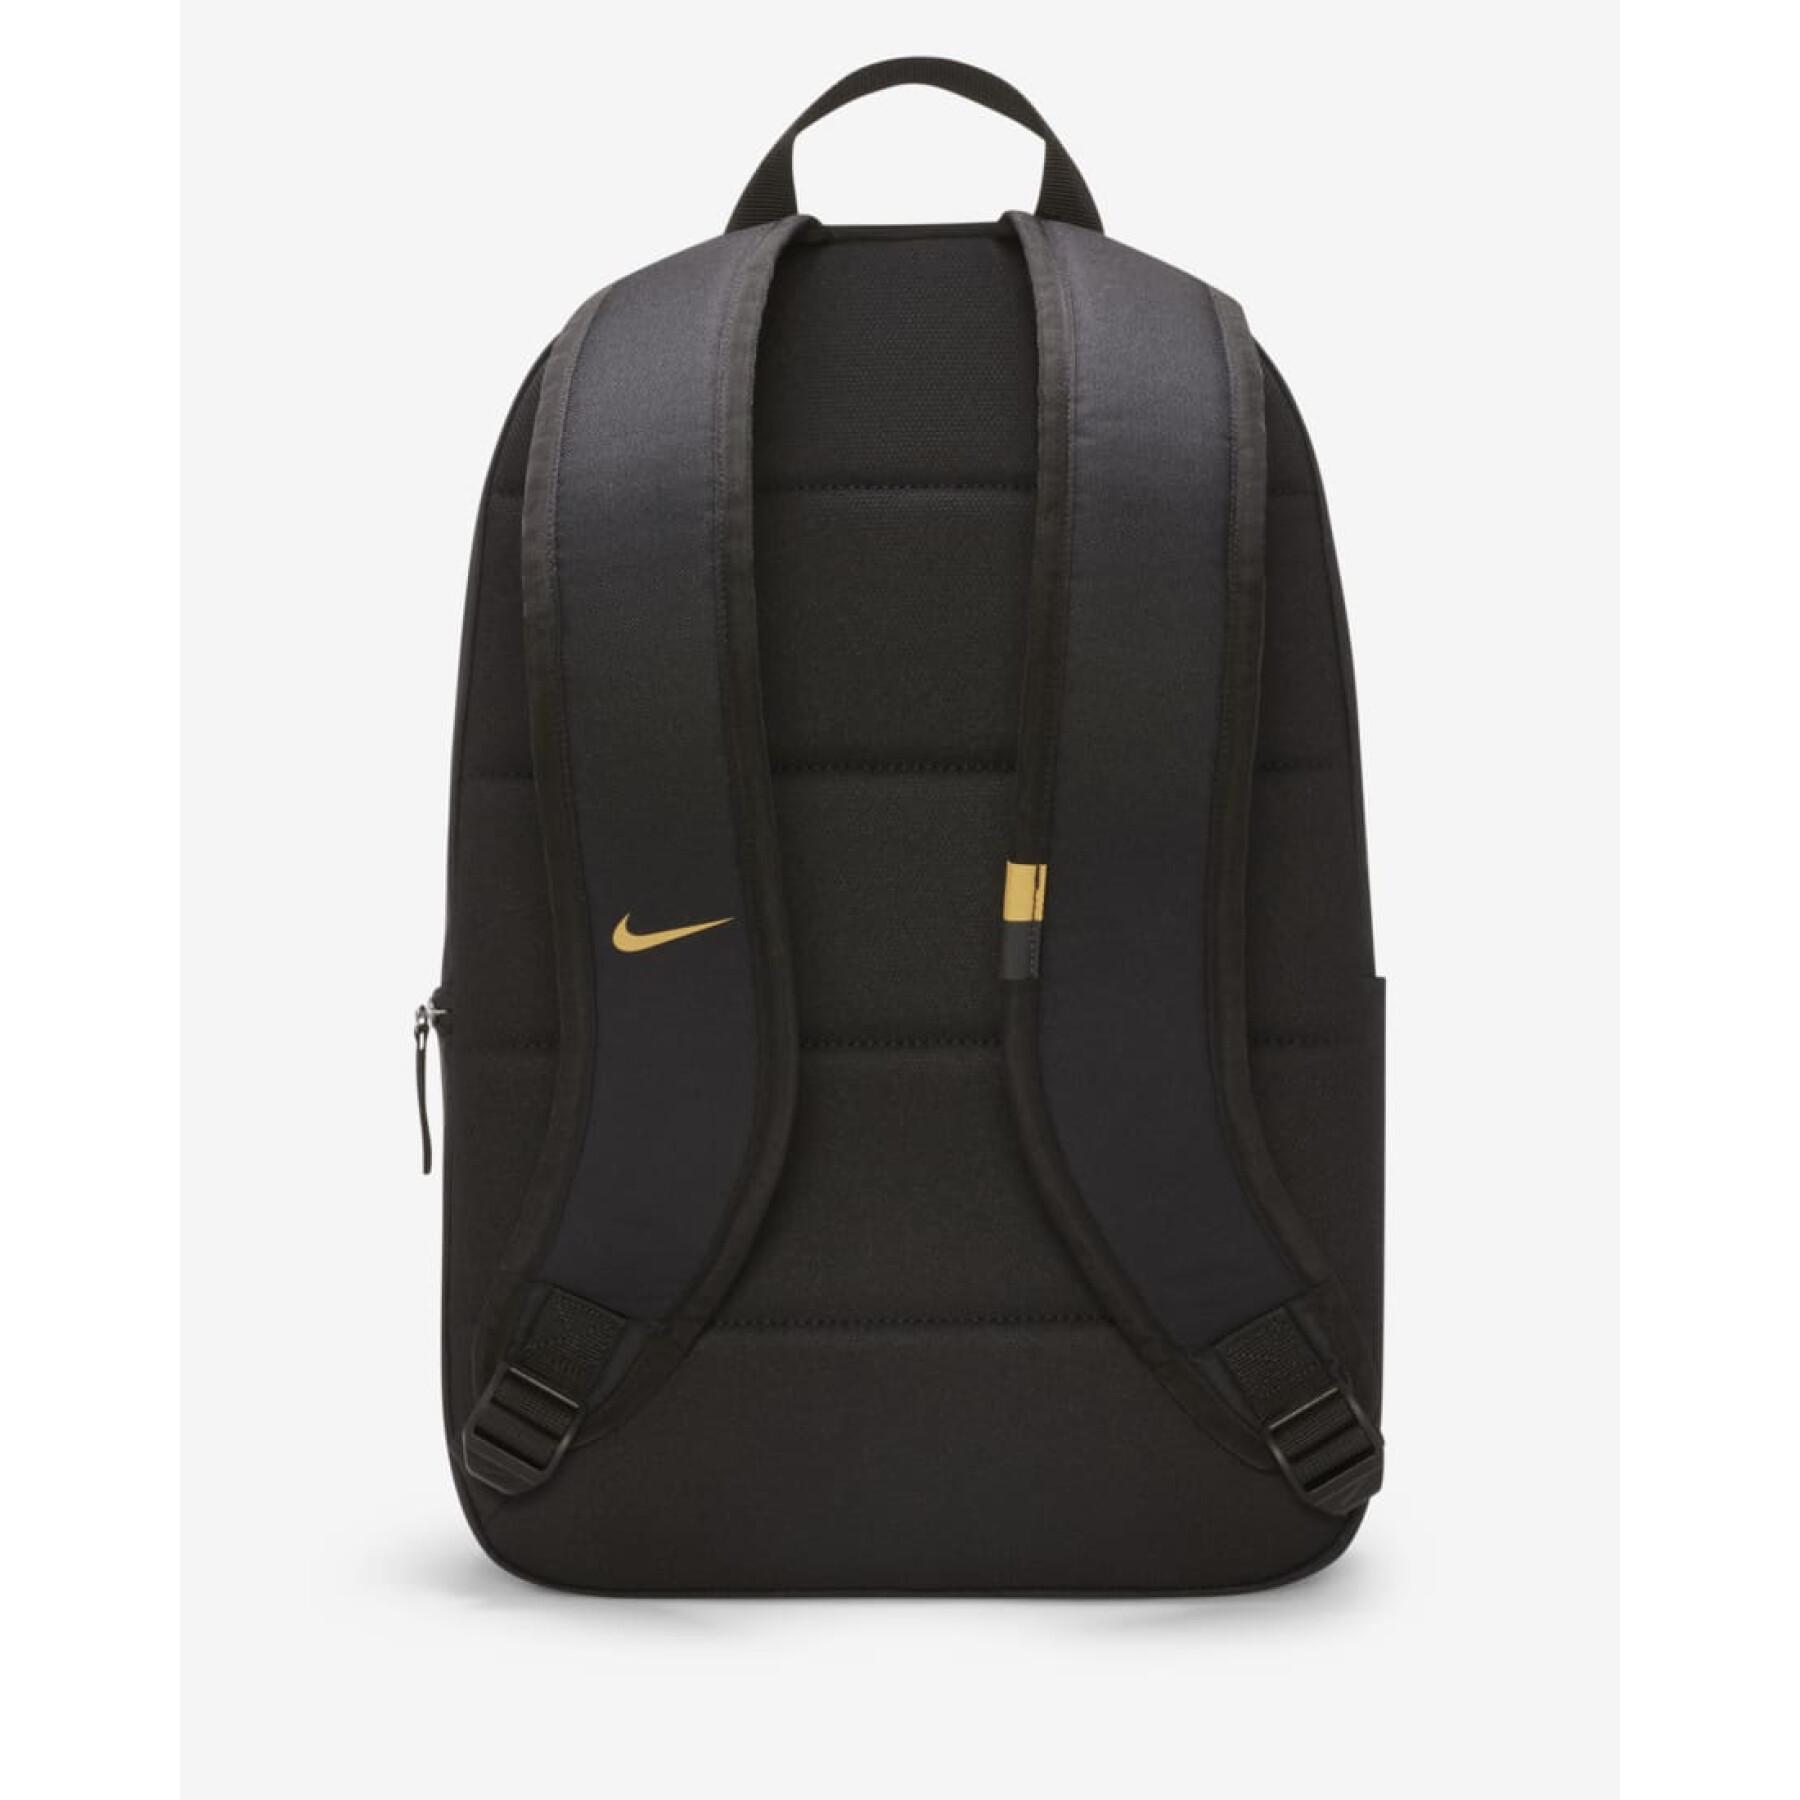 Backpack Inter Milan